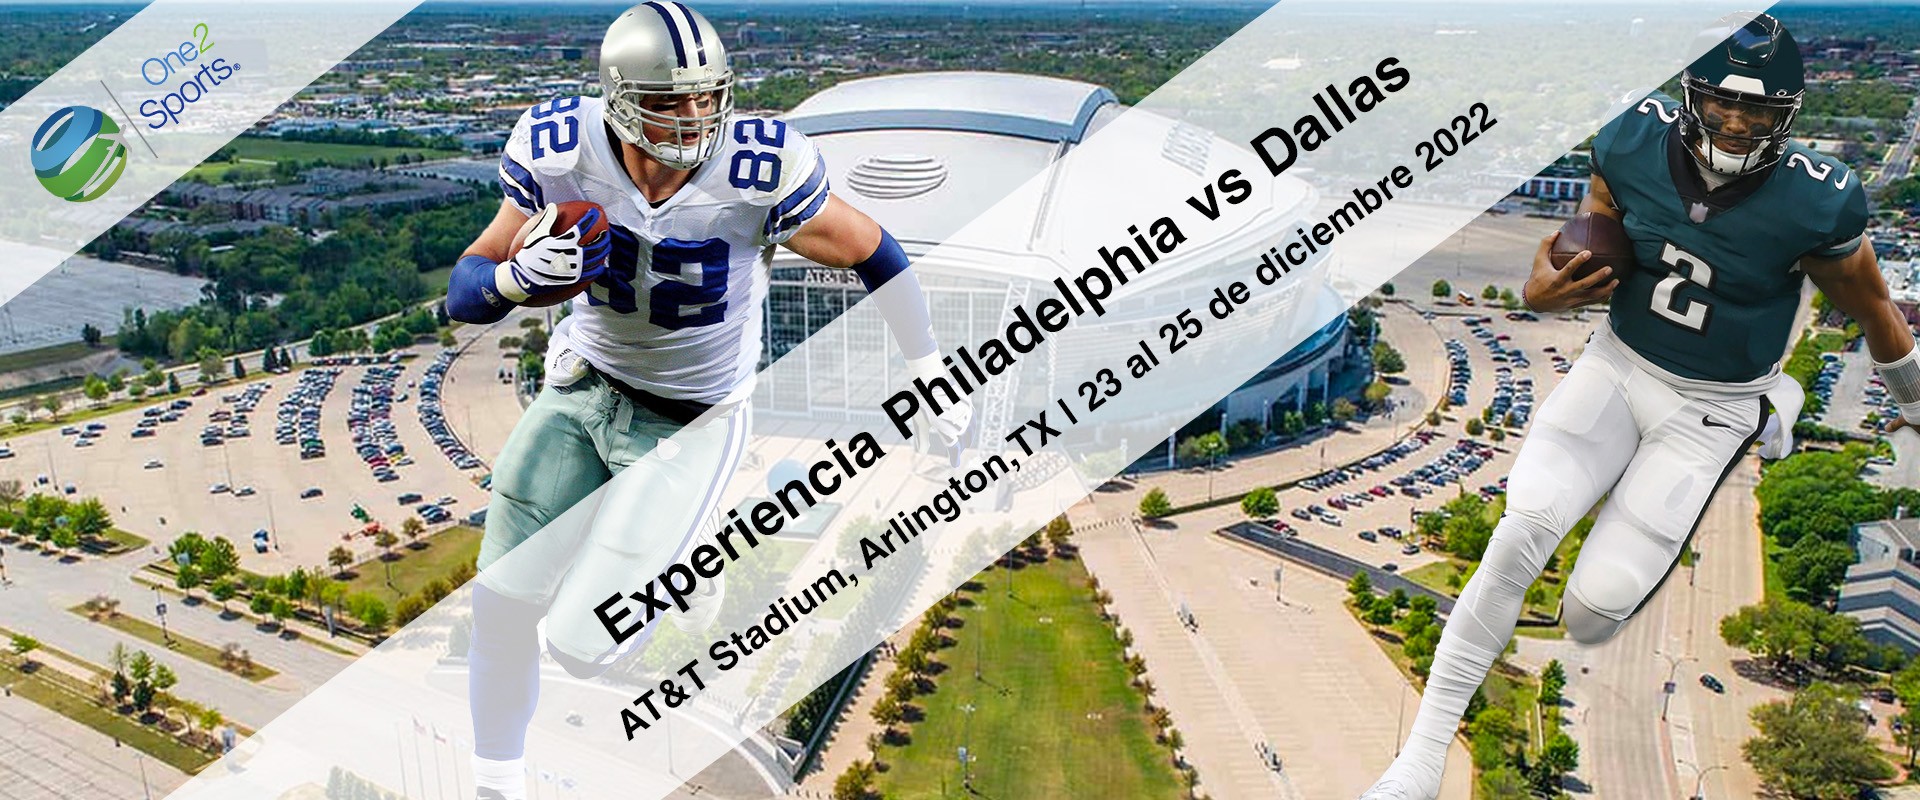 Dallas vs Philadelphia